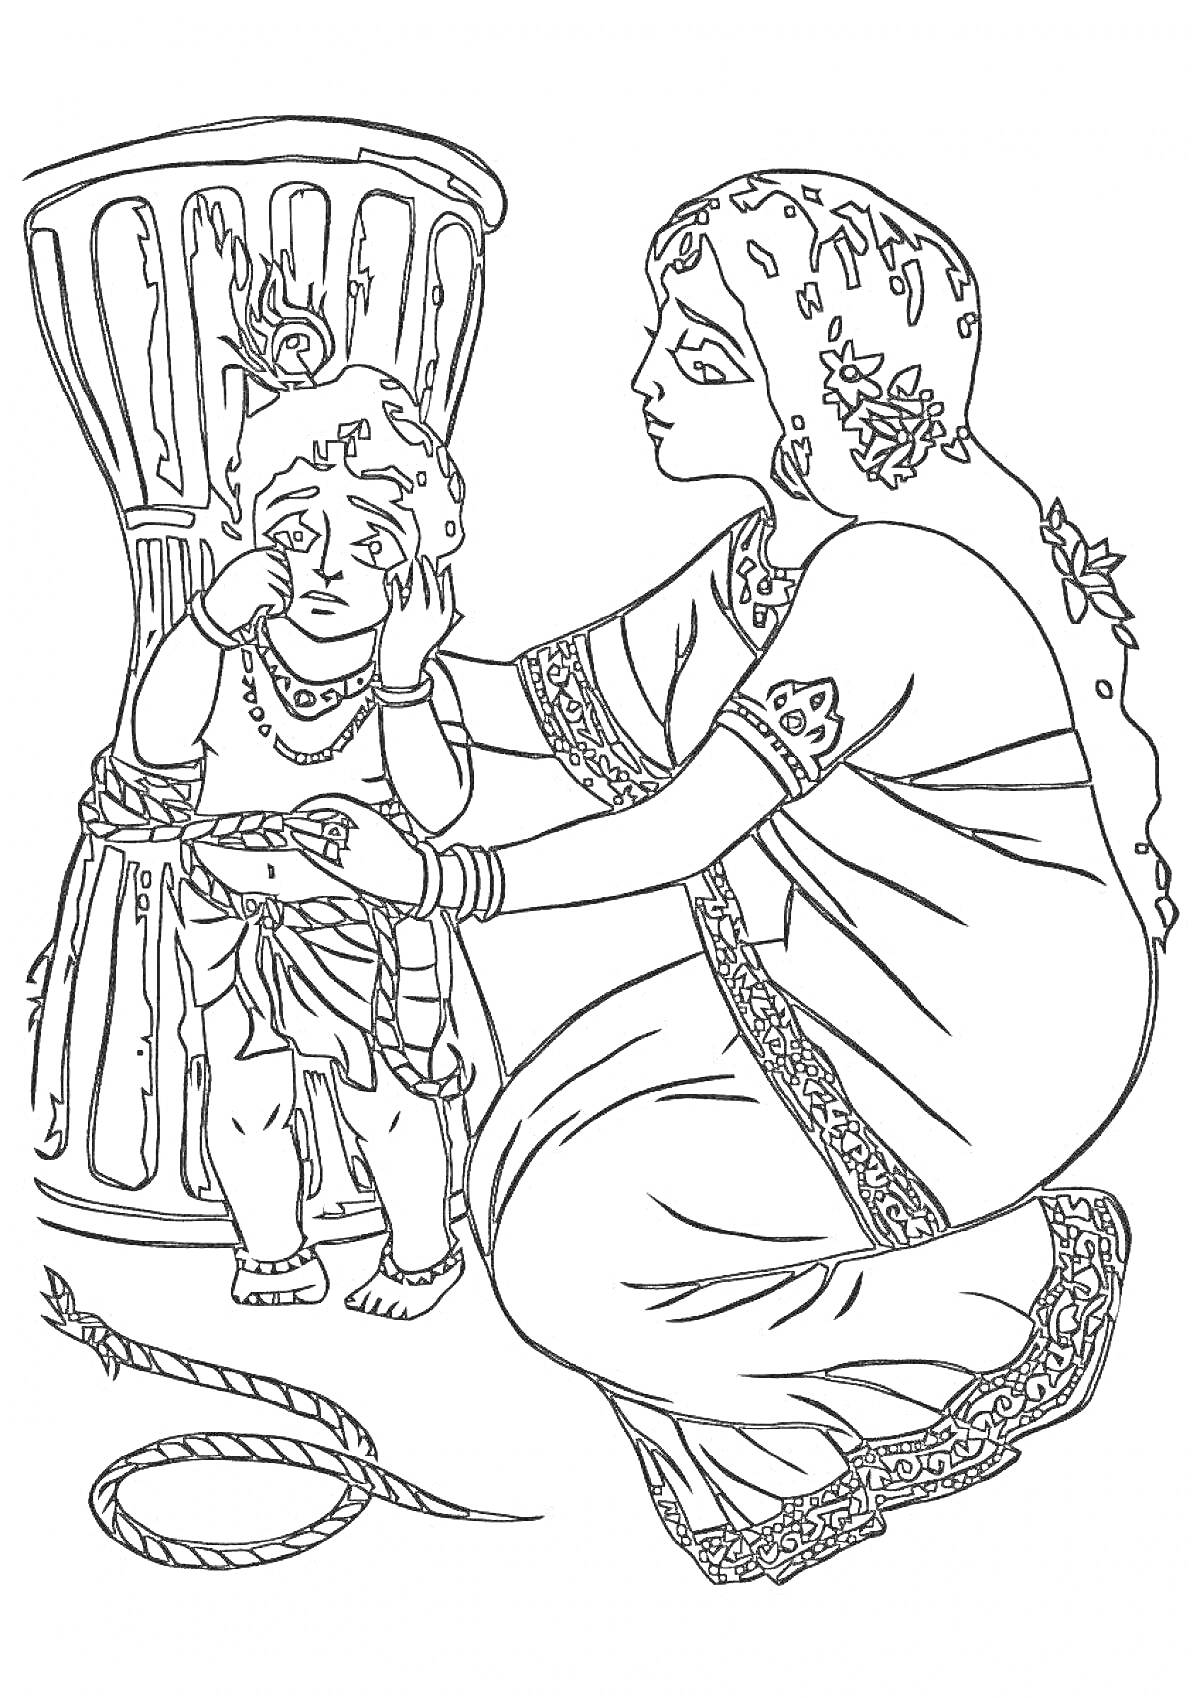 Раскраска Кришна перед ящиком с женщиной в традиционной одежде, которая держит его руку